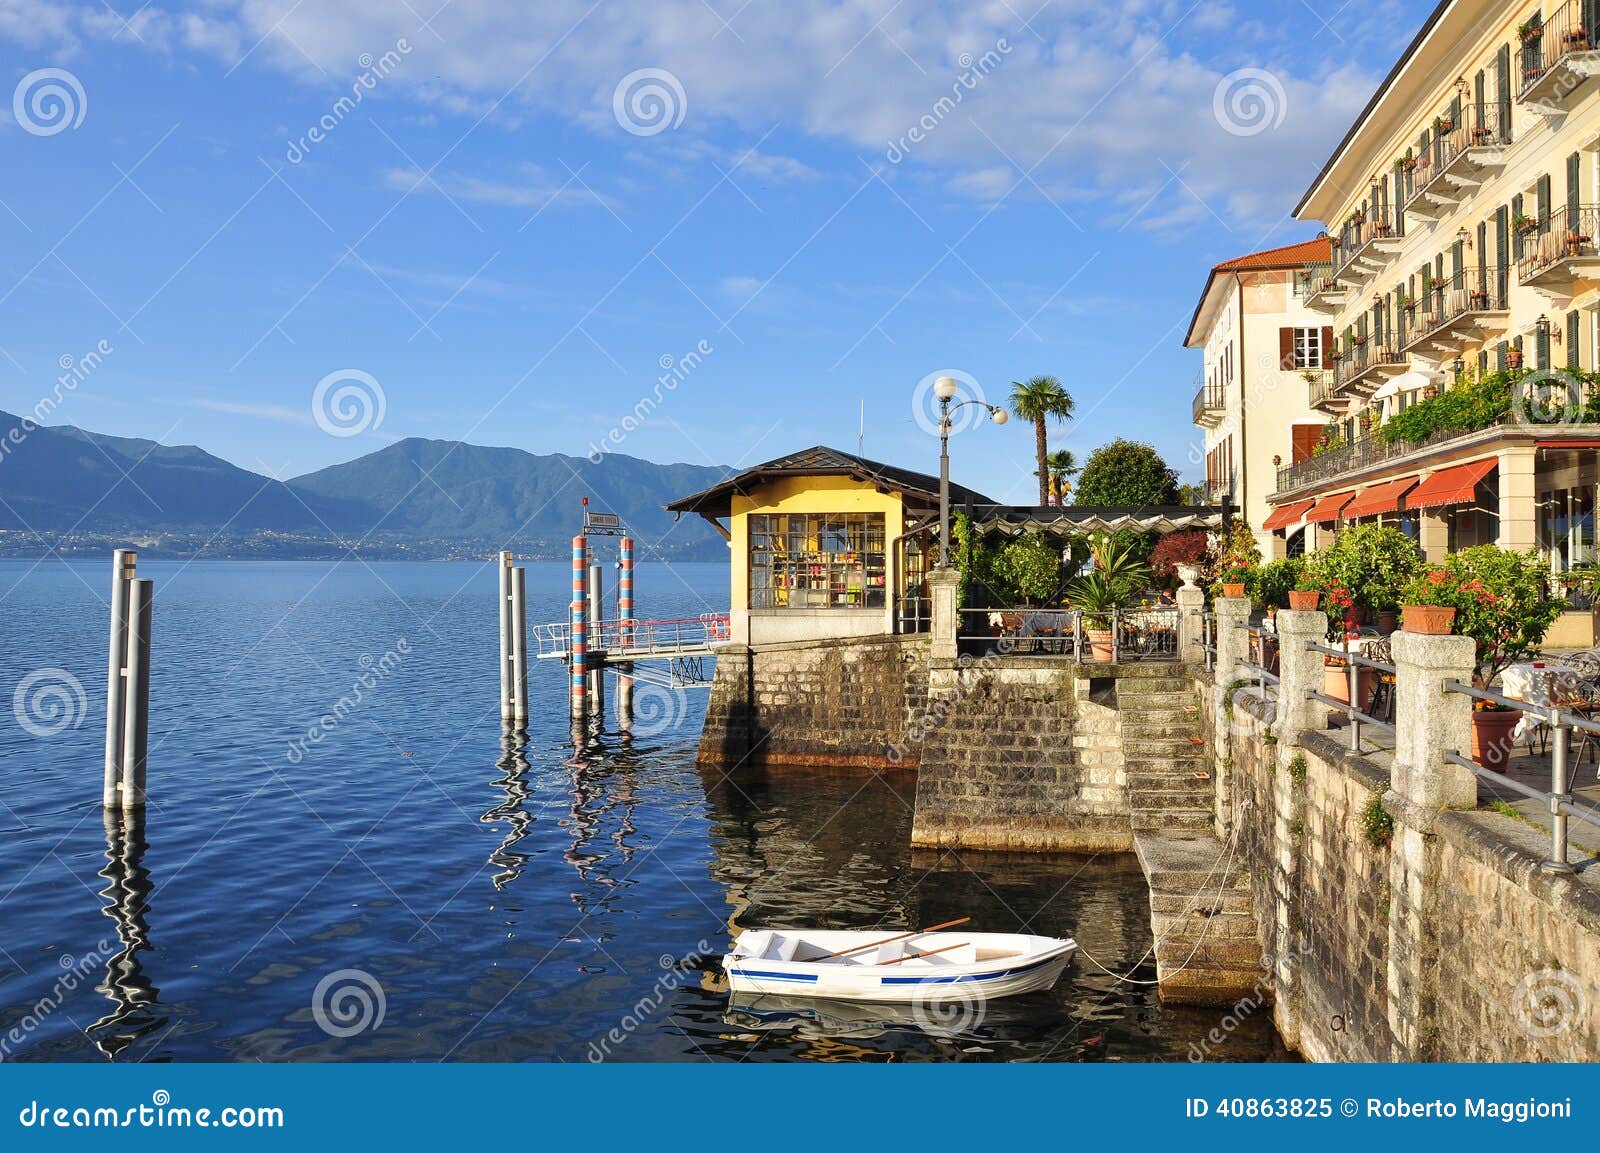  Promenade, Lake (lago) Maggiore, Italy. Stock Photo - Image: 40863825